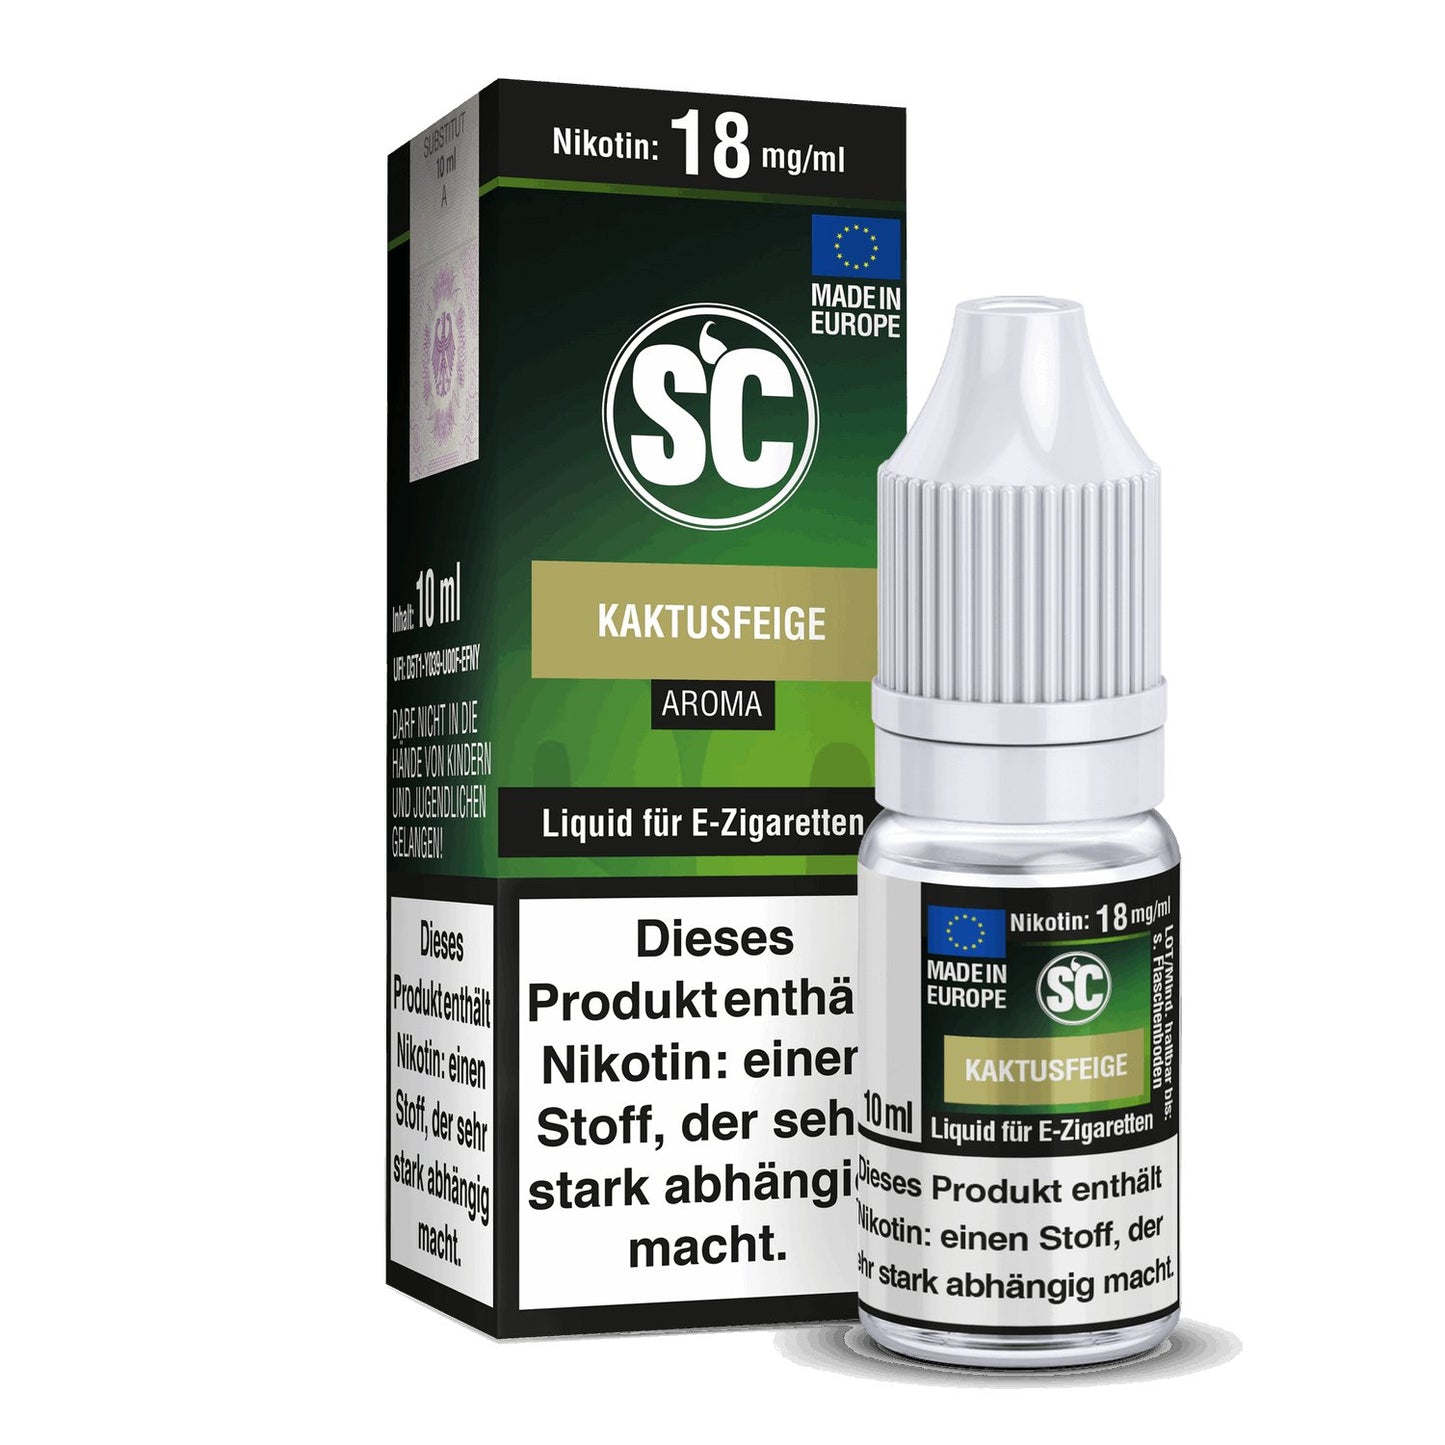 SC - Kaktusfeige - 10ml Fertigliquid (Nikotinfrei/Nikotin) - 1er Packung 3 mg/ml - Vapes4you